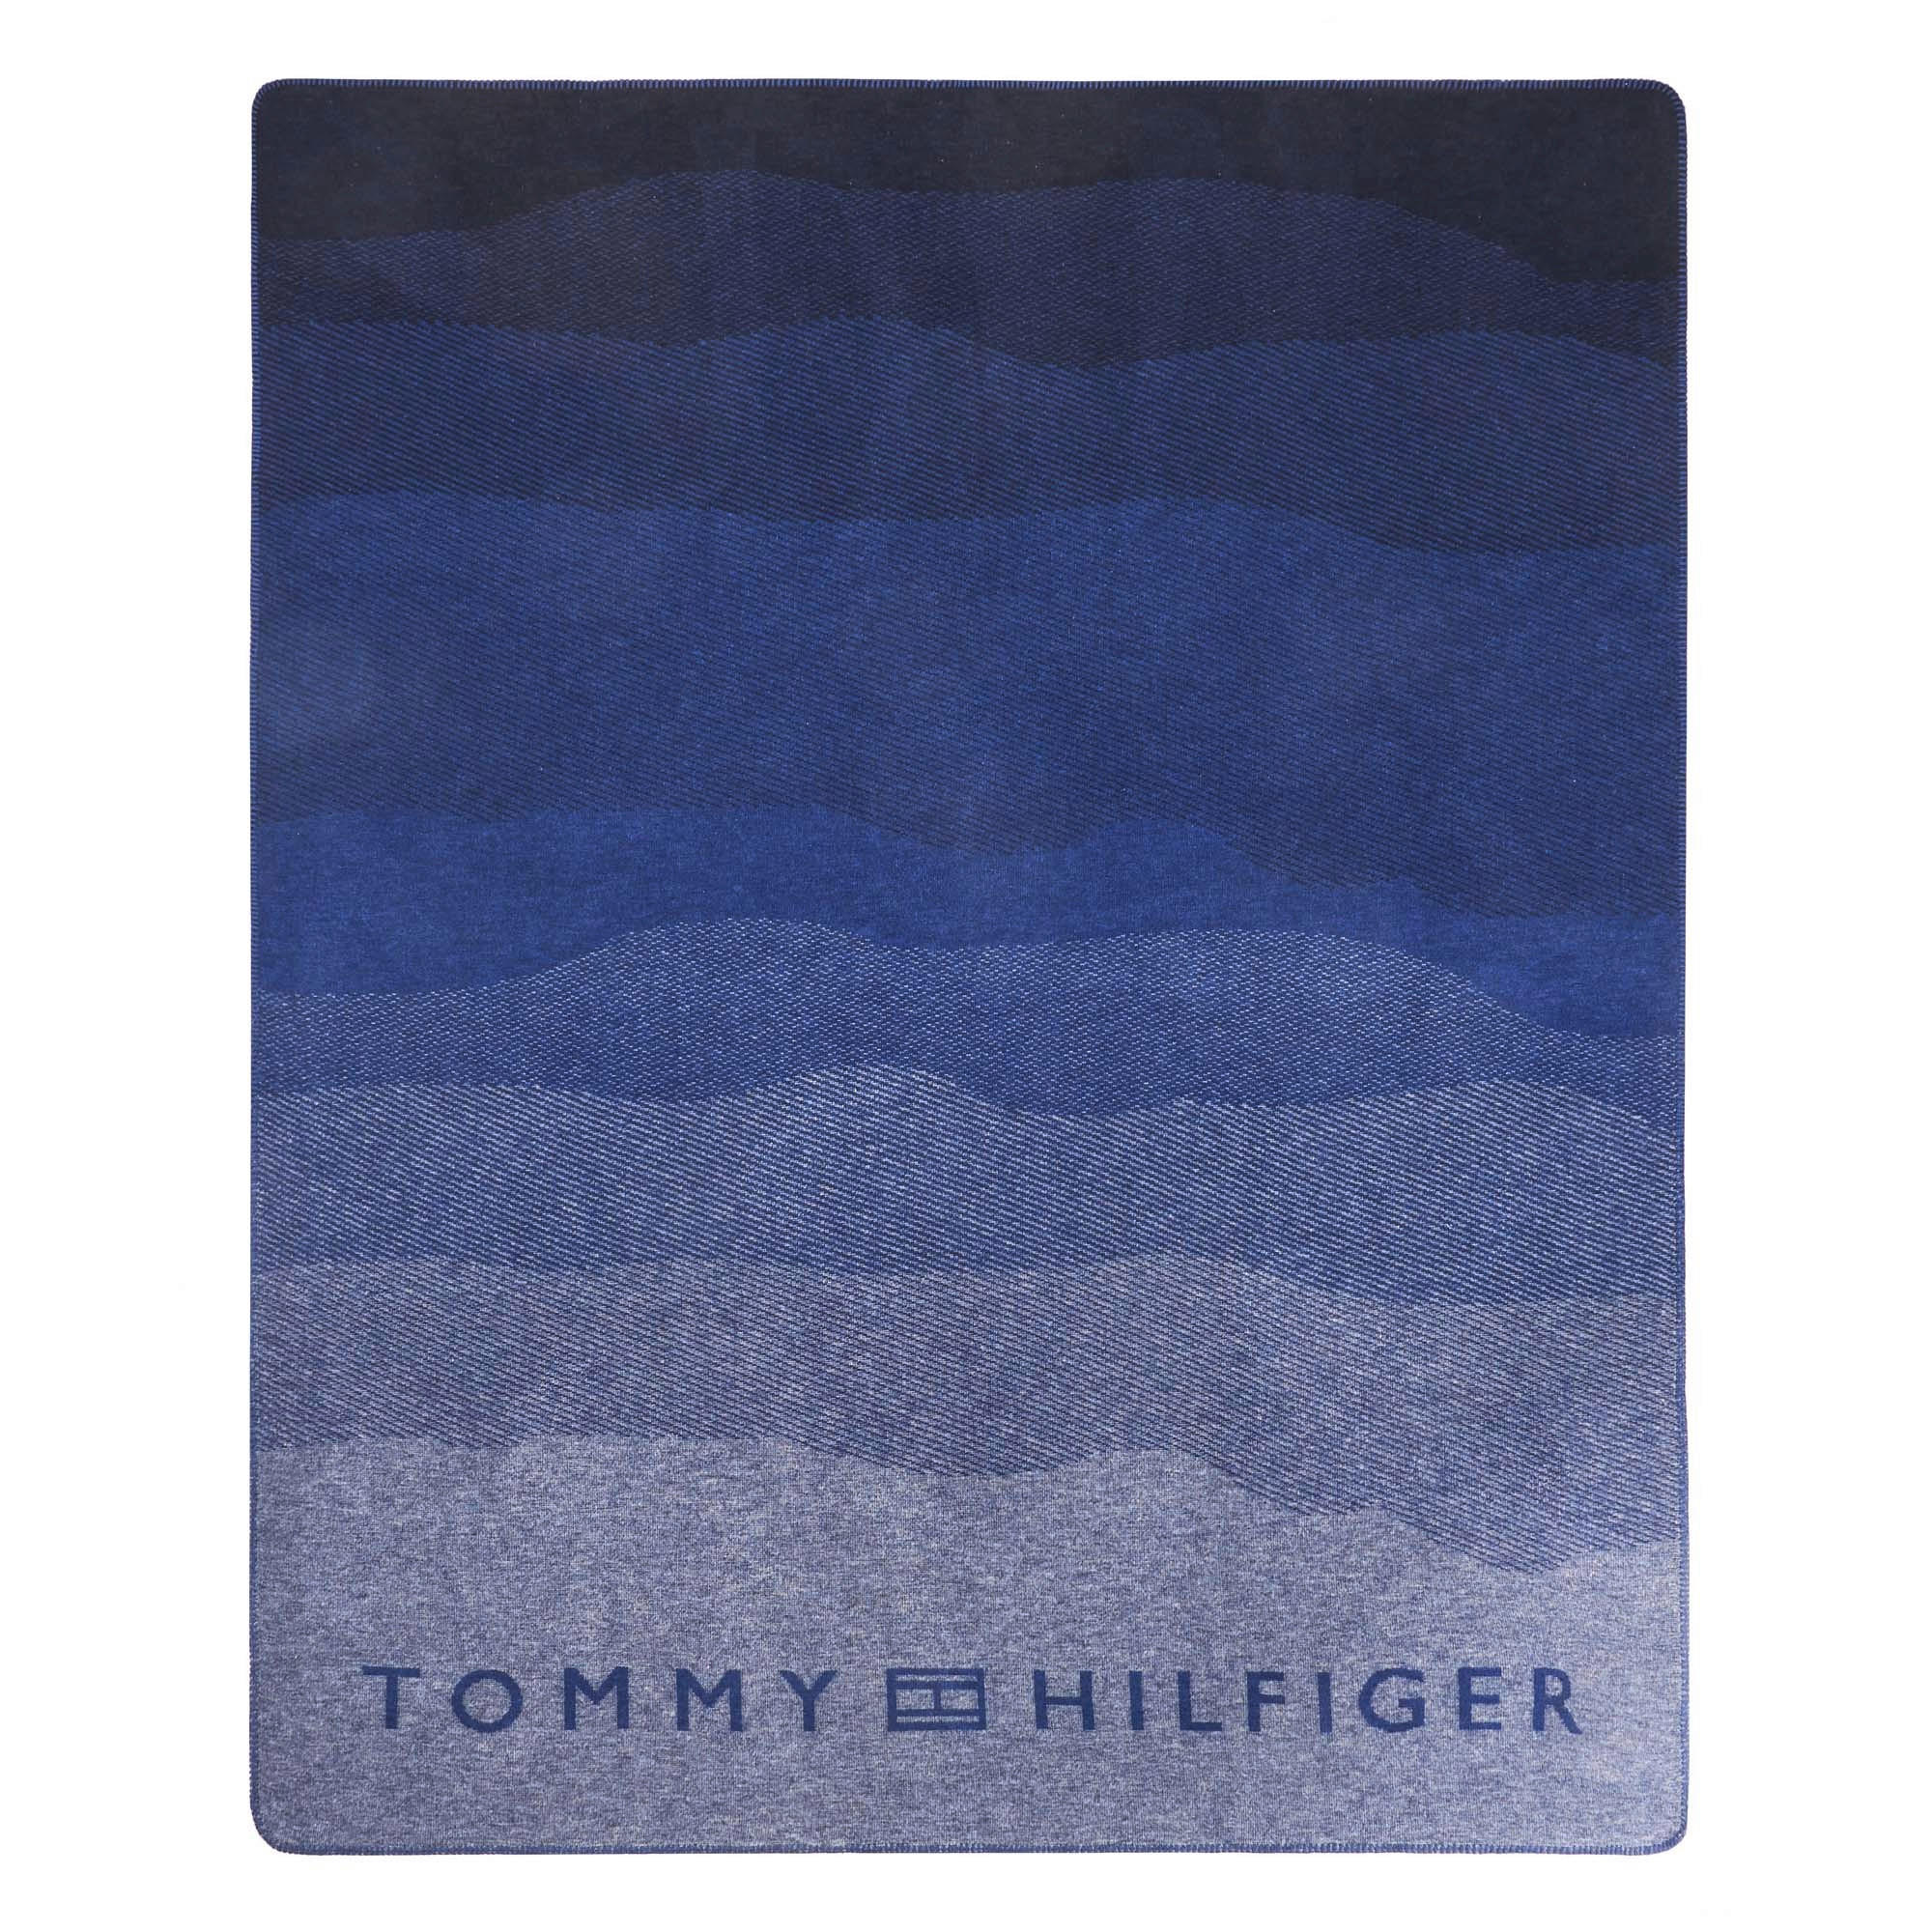 WOHNDECKE 150/200 cm  - Blau, Basics, Textil (150/200cm) - Tommy Hilfiger